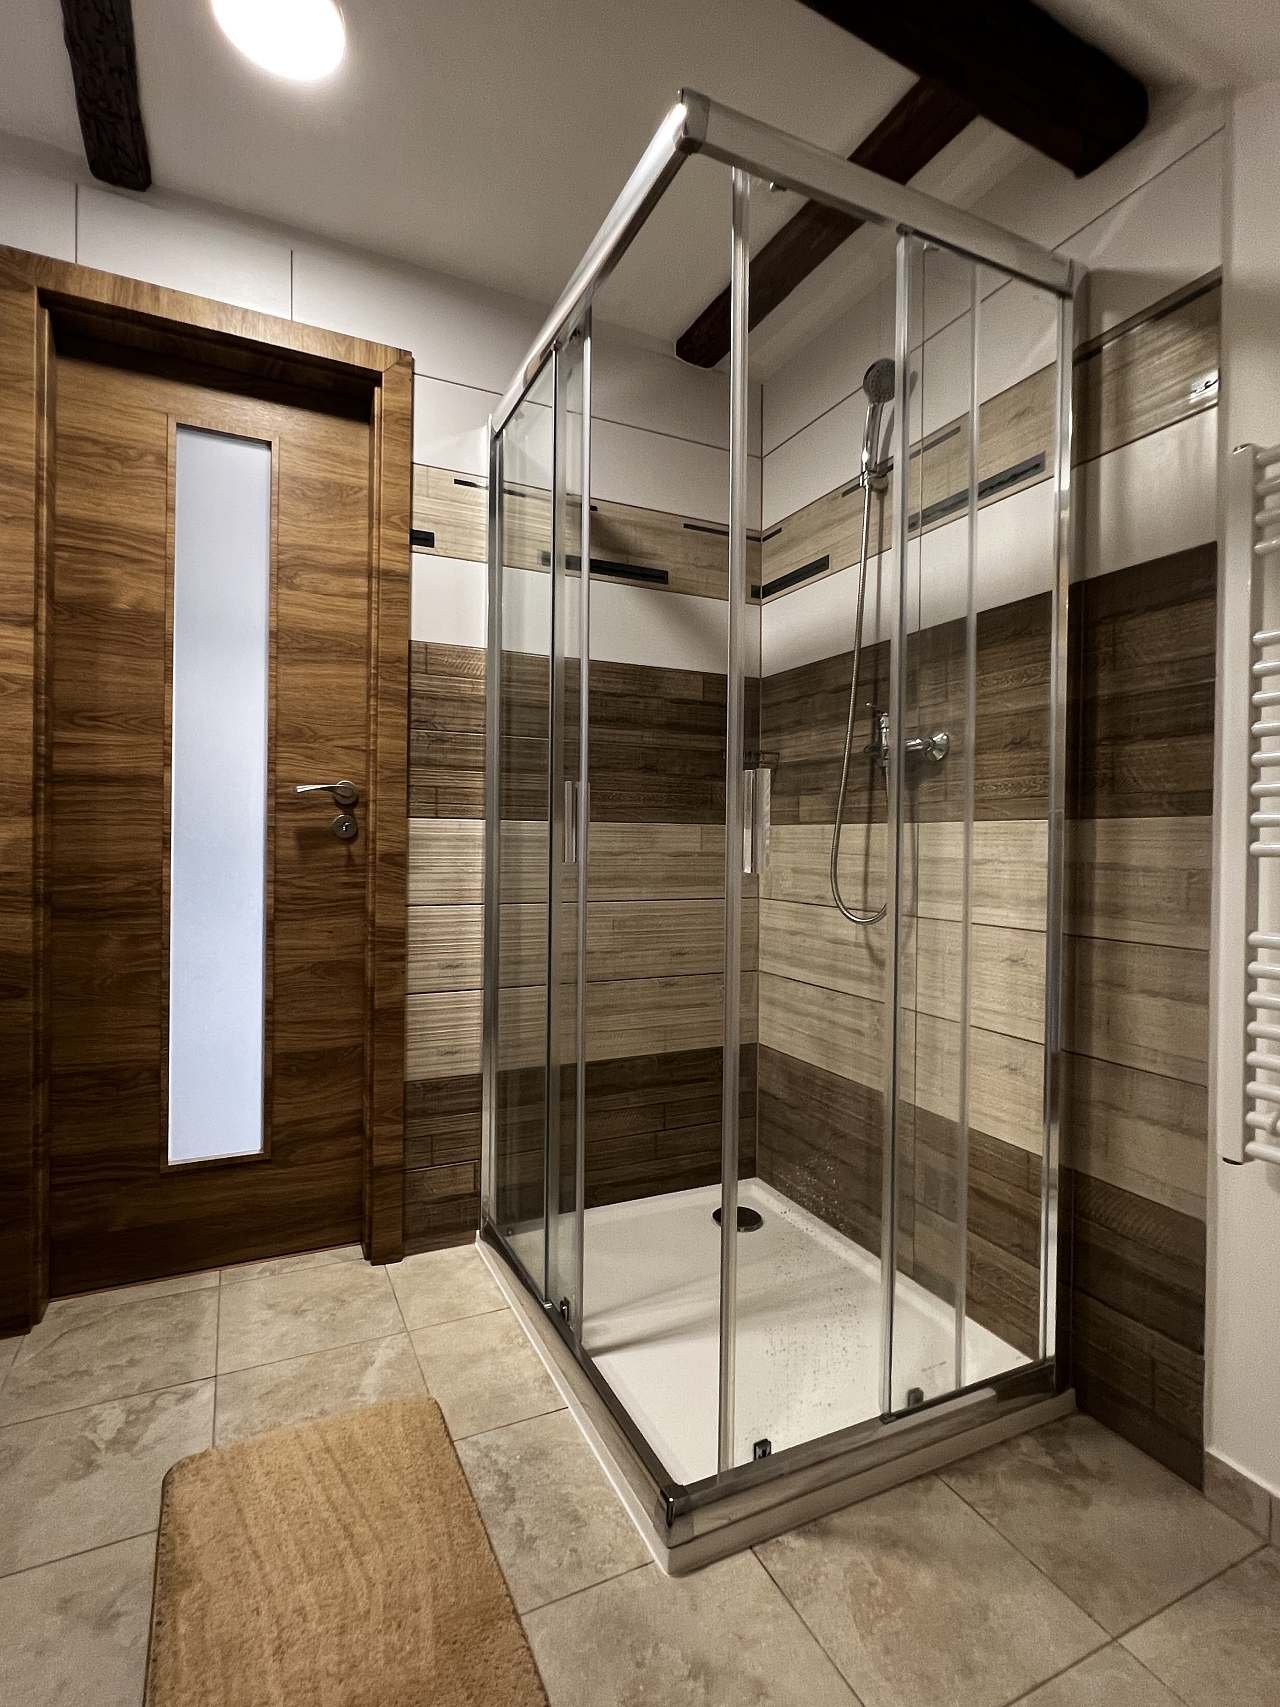 apartmán v podkroví - koupelna - sprchový kout